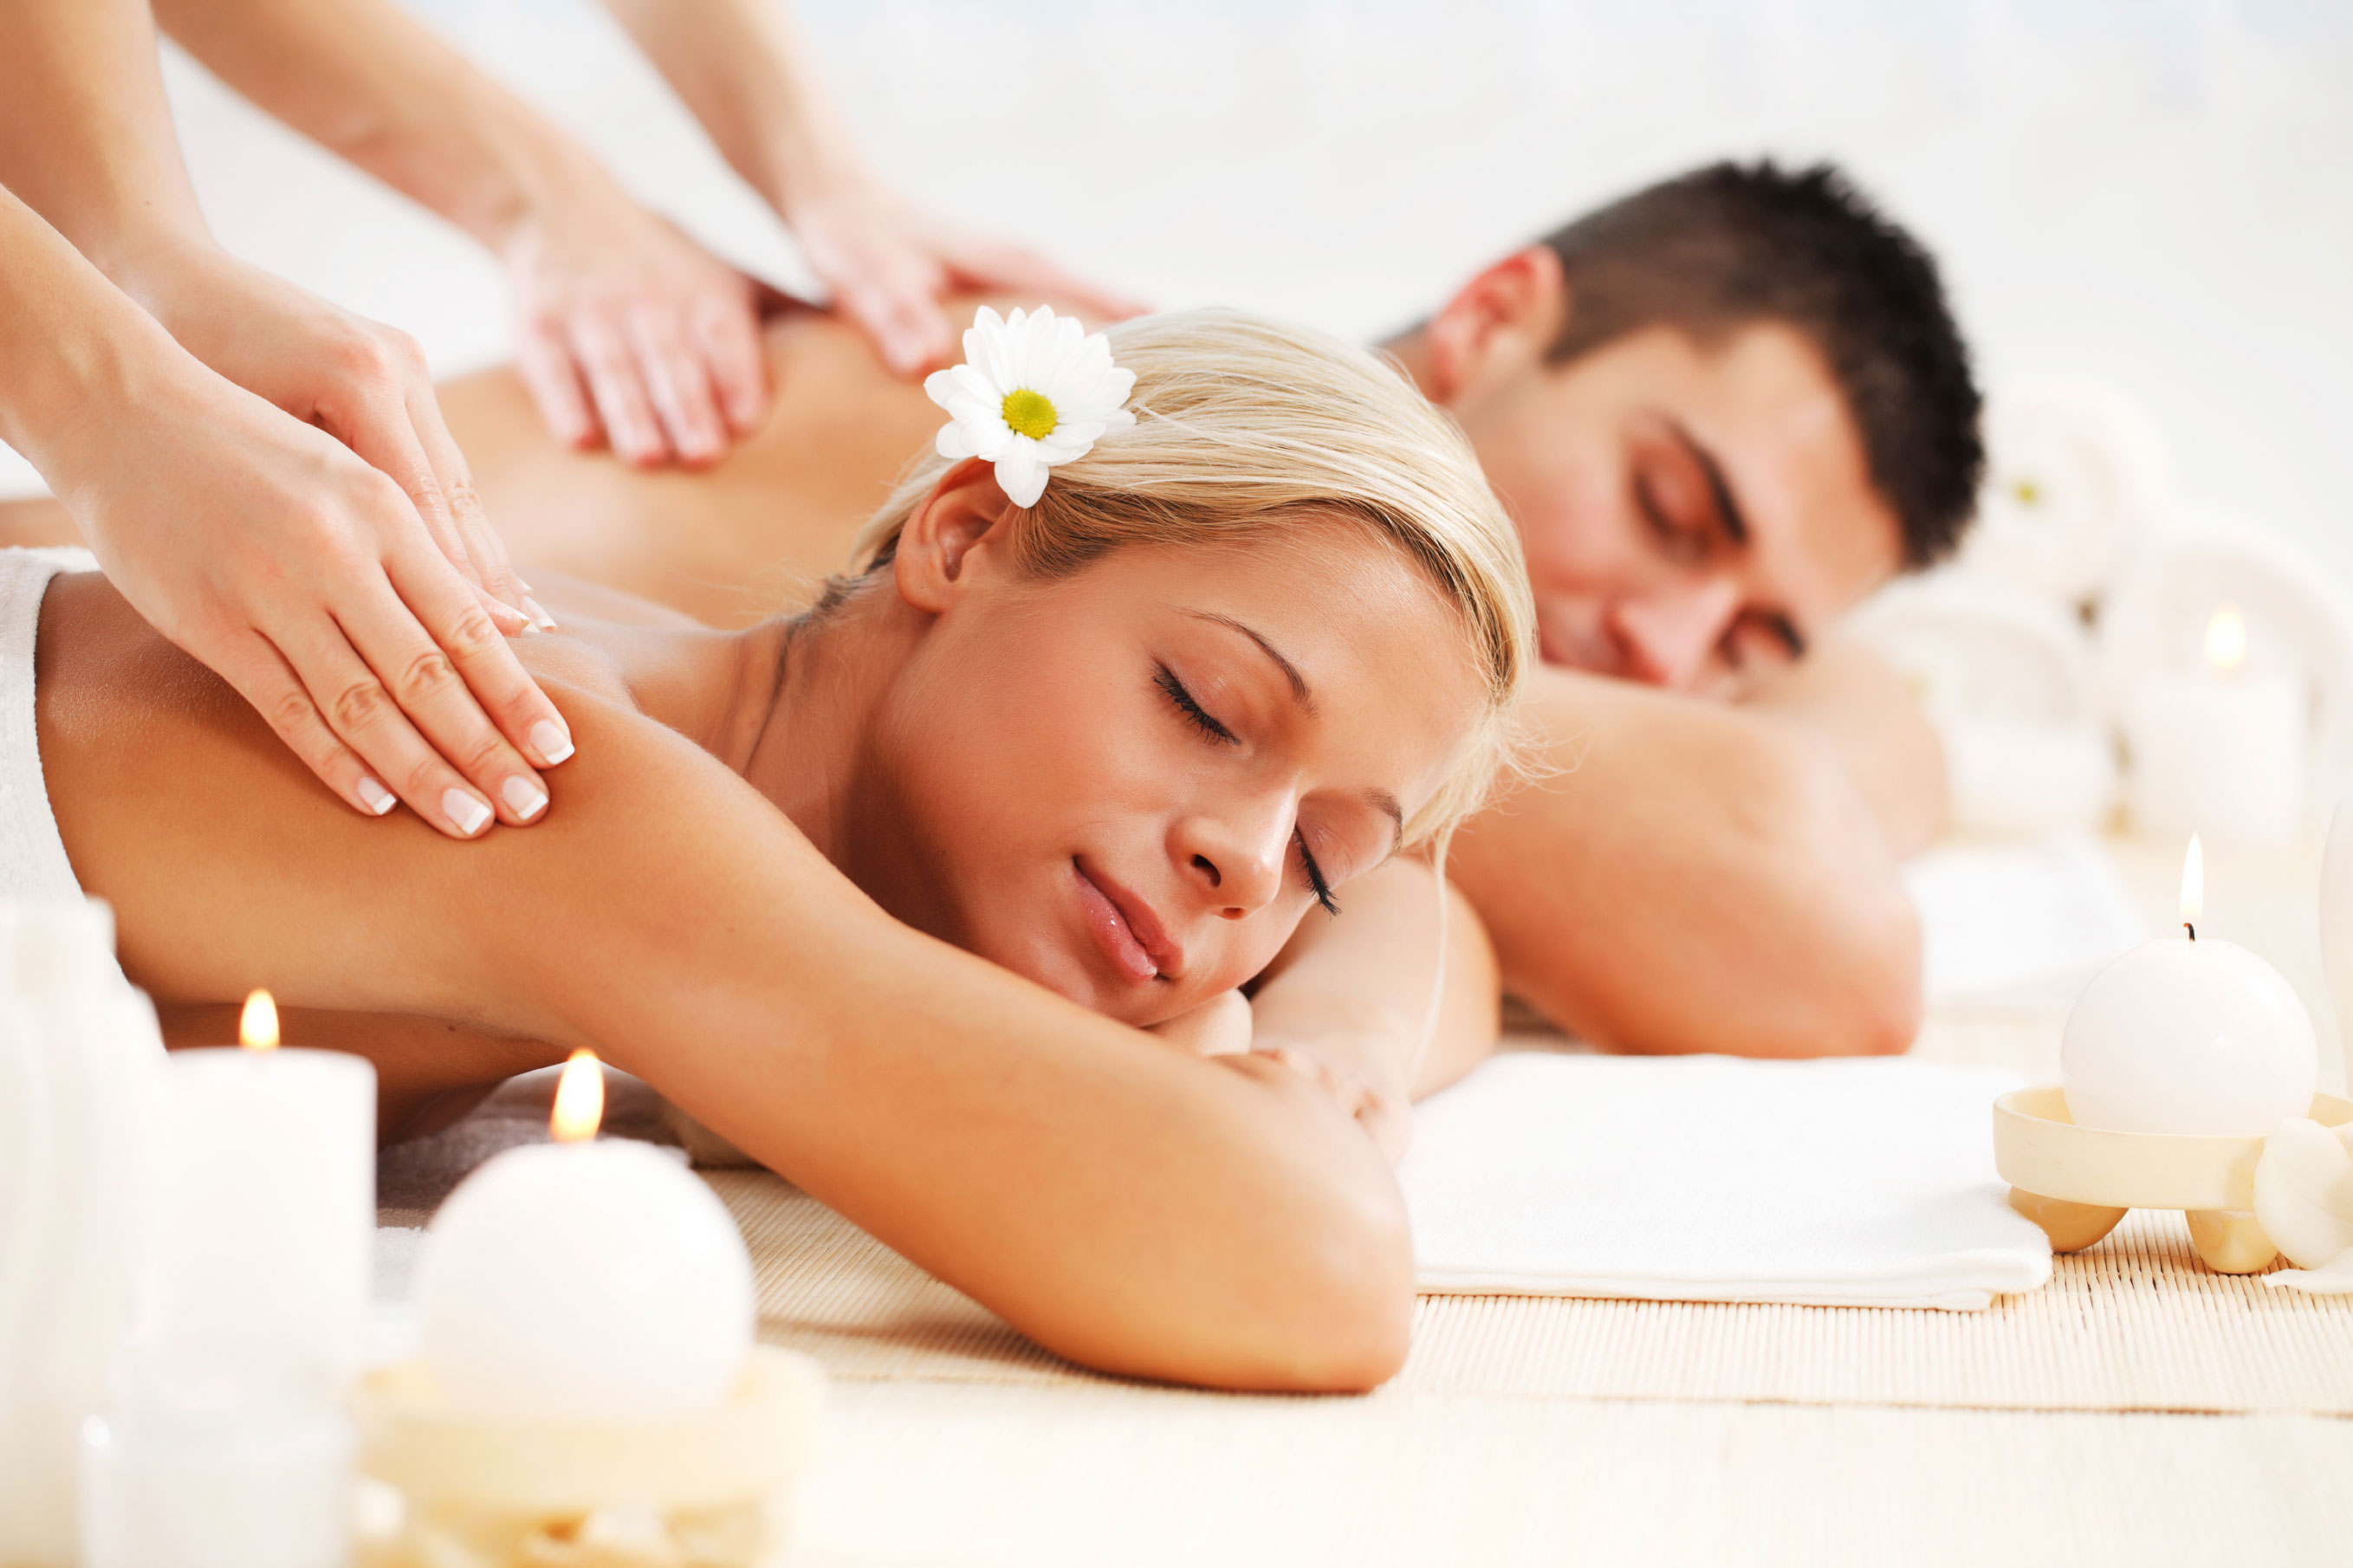 Massage thư giãn dễ dàng giúp bạn giải tỏa áp lực, lấy lại tinh thần thoải mái